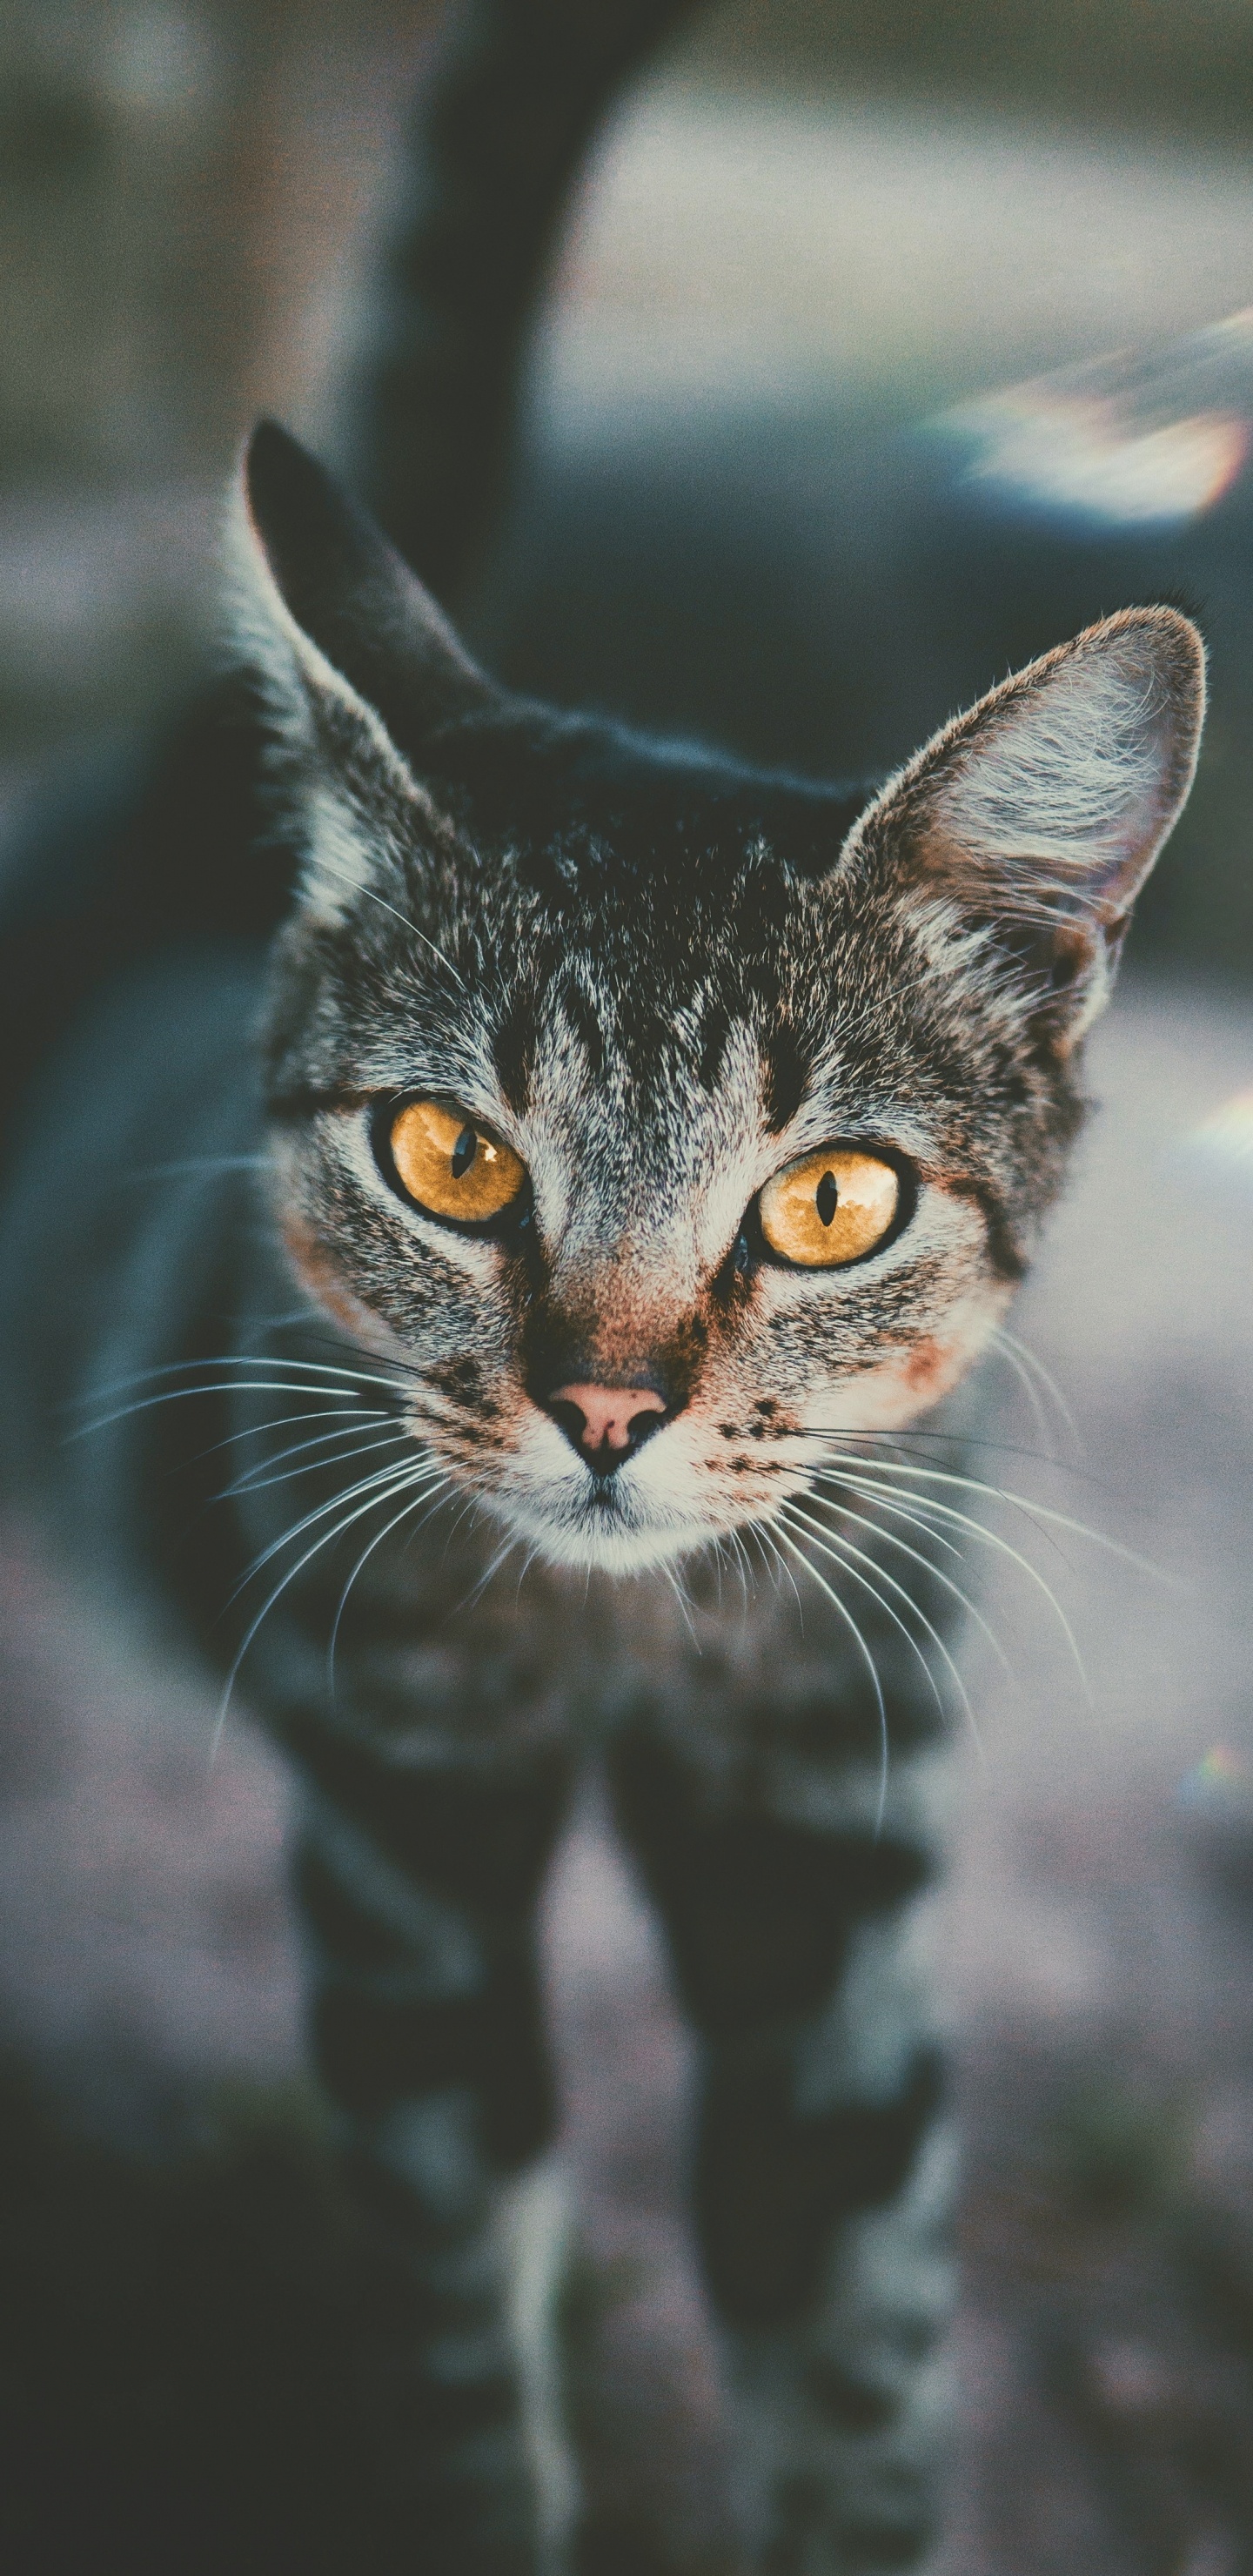 Black and White Cat in Tilt Shift Lens. Wallpaper in 1440x2960 Resolution